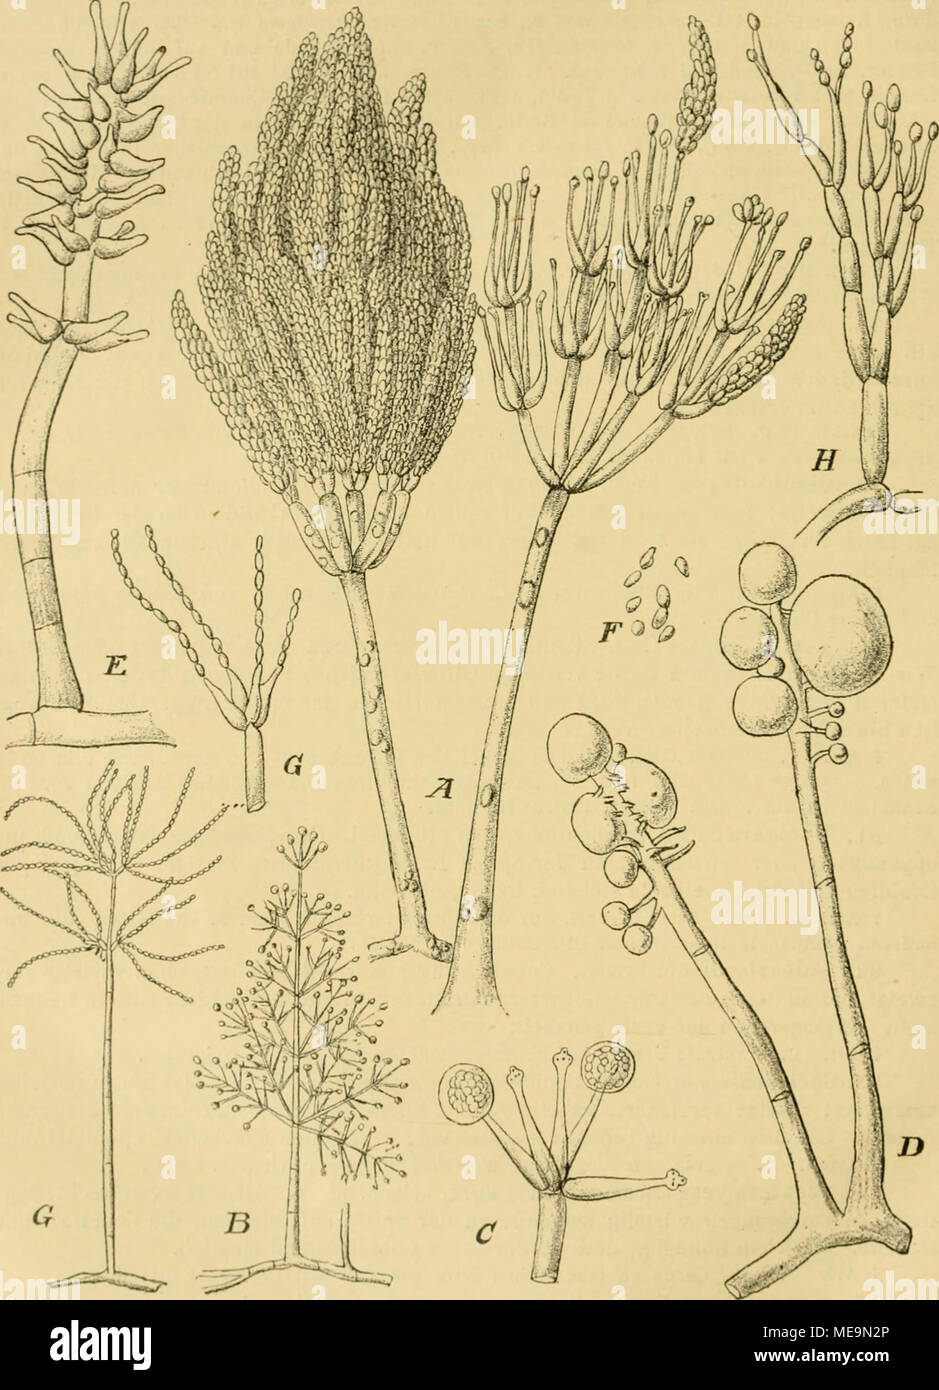 . Die Natürlichen Pflanzenfamilien nebst ihren Gattungen und wichtigeren Arten, insbesondere den Nutzpflanzen, unter Mitwirkung zahlreicher hervorragender Fachgelehrten begründet . Fig. 2I'.l. A Cloiioitaclii/H Araucaria Cotda. Zwoi t'oaidiuiitiah'cr, veißr. — 8—C AcrusUilnymu.i ci&gt;inab'iriiiii'&lt; CorCm. B CV,ni(litntrrig.T, vergr. C Stock eines C'onidicDtrflgerH mit C'ouidionltöpfclien, stilikor vergr, — ll—F ILirziilla C'ipitata Cost. et Matr. L Conidienlrägor mit diircli Schleim verklebten Sporenköpfcbun, öliO/l K Coiüdientiäger, 72o/l. /' Sporen, 72ii/I. — G Spicaria elcyniis (Corda)  Stock Photo